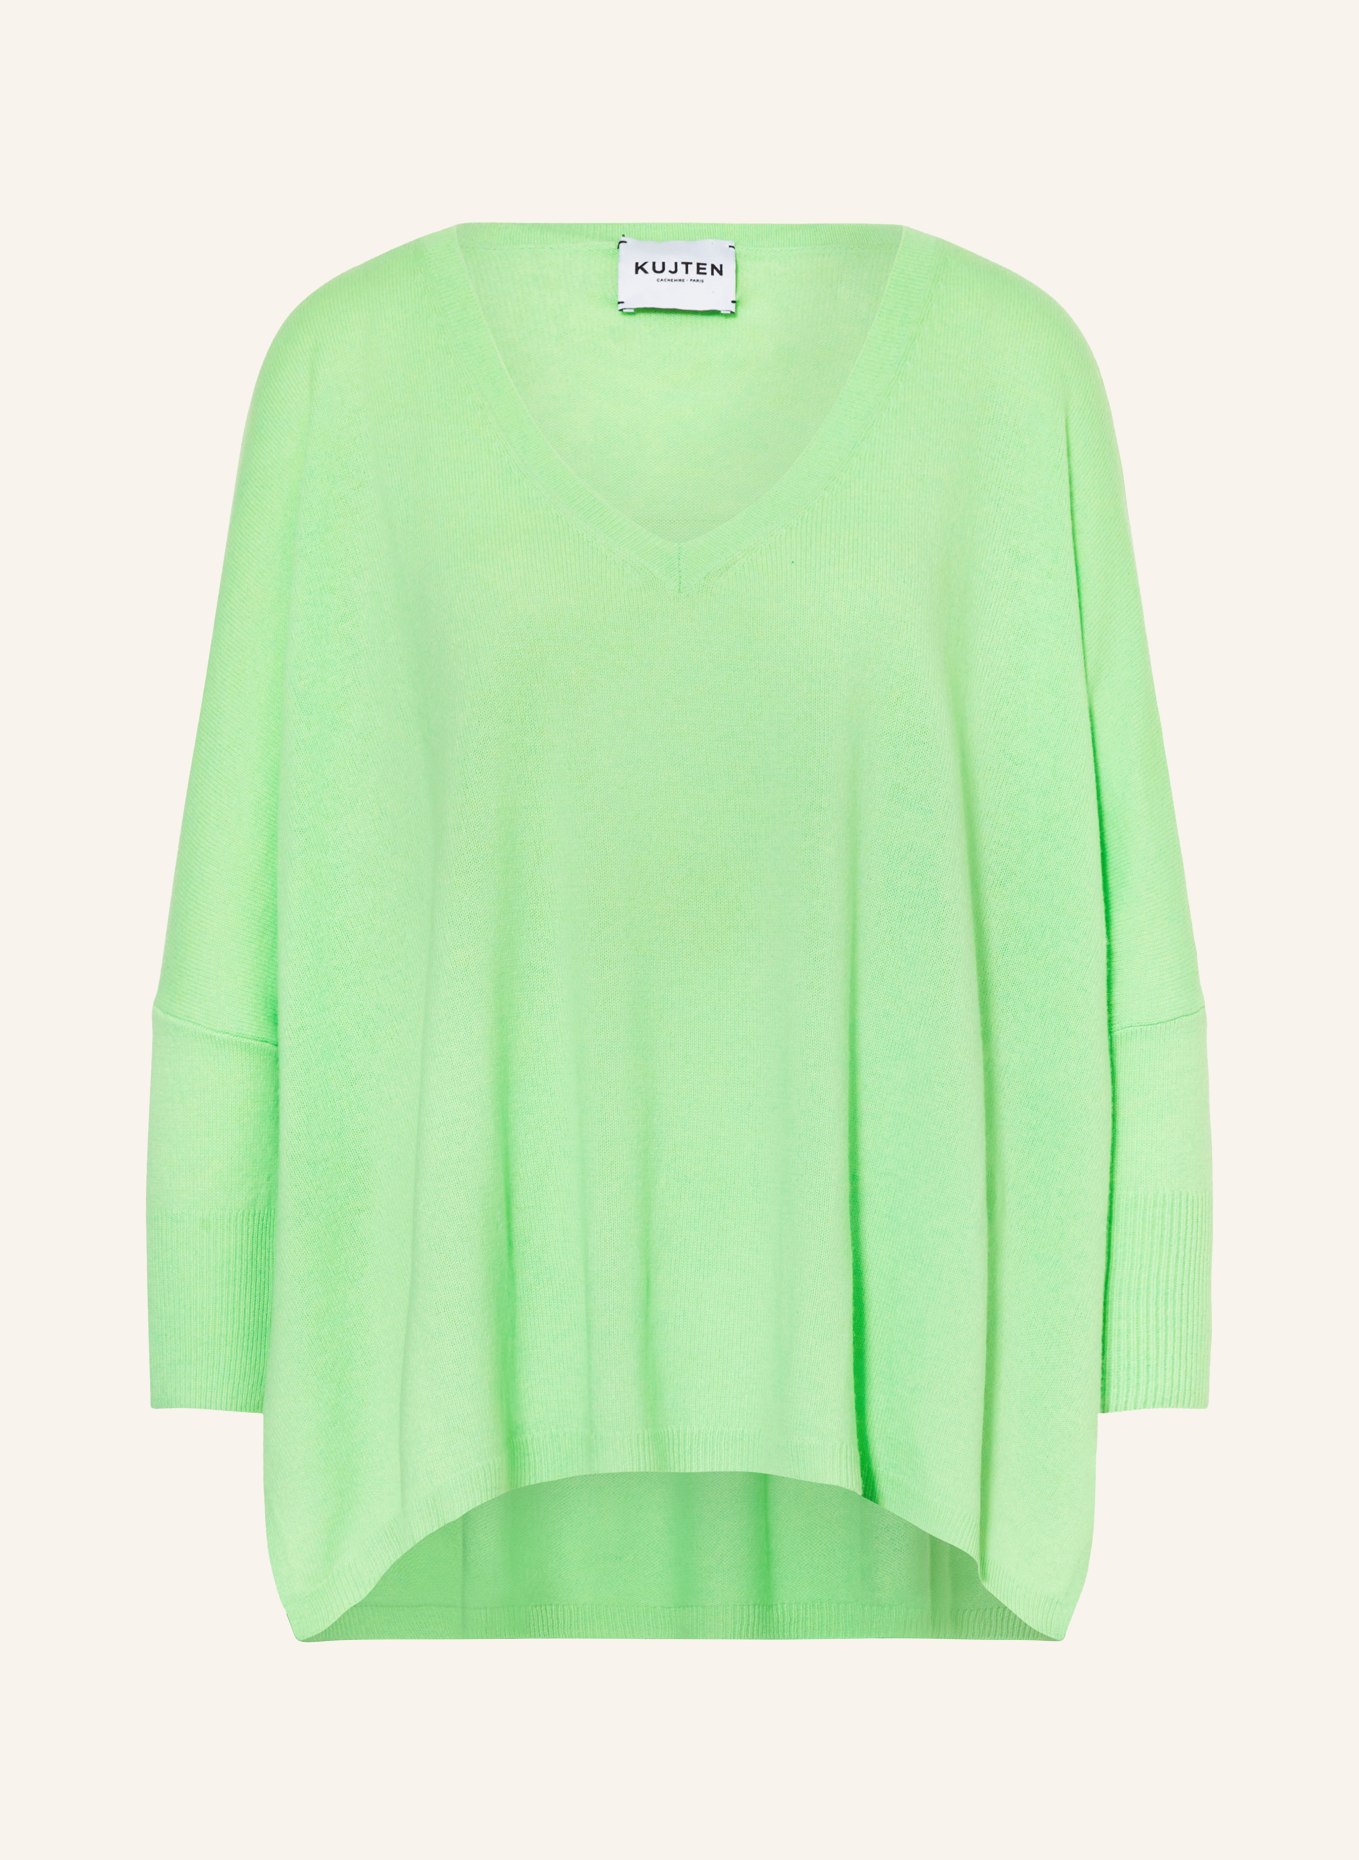 KUJTEN Cashmere-Pullover MINIE, Farbe: HELLGRÜN (Bild 1)